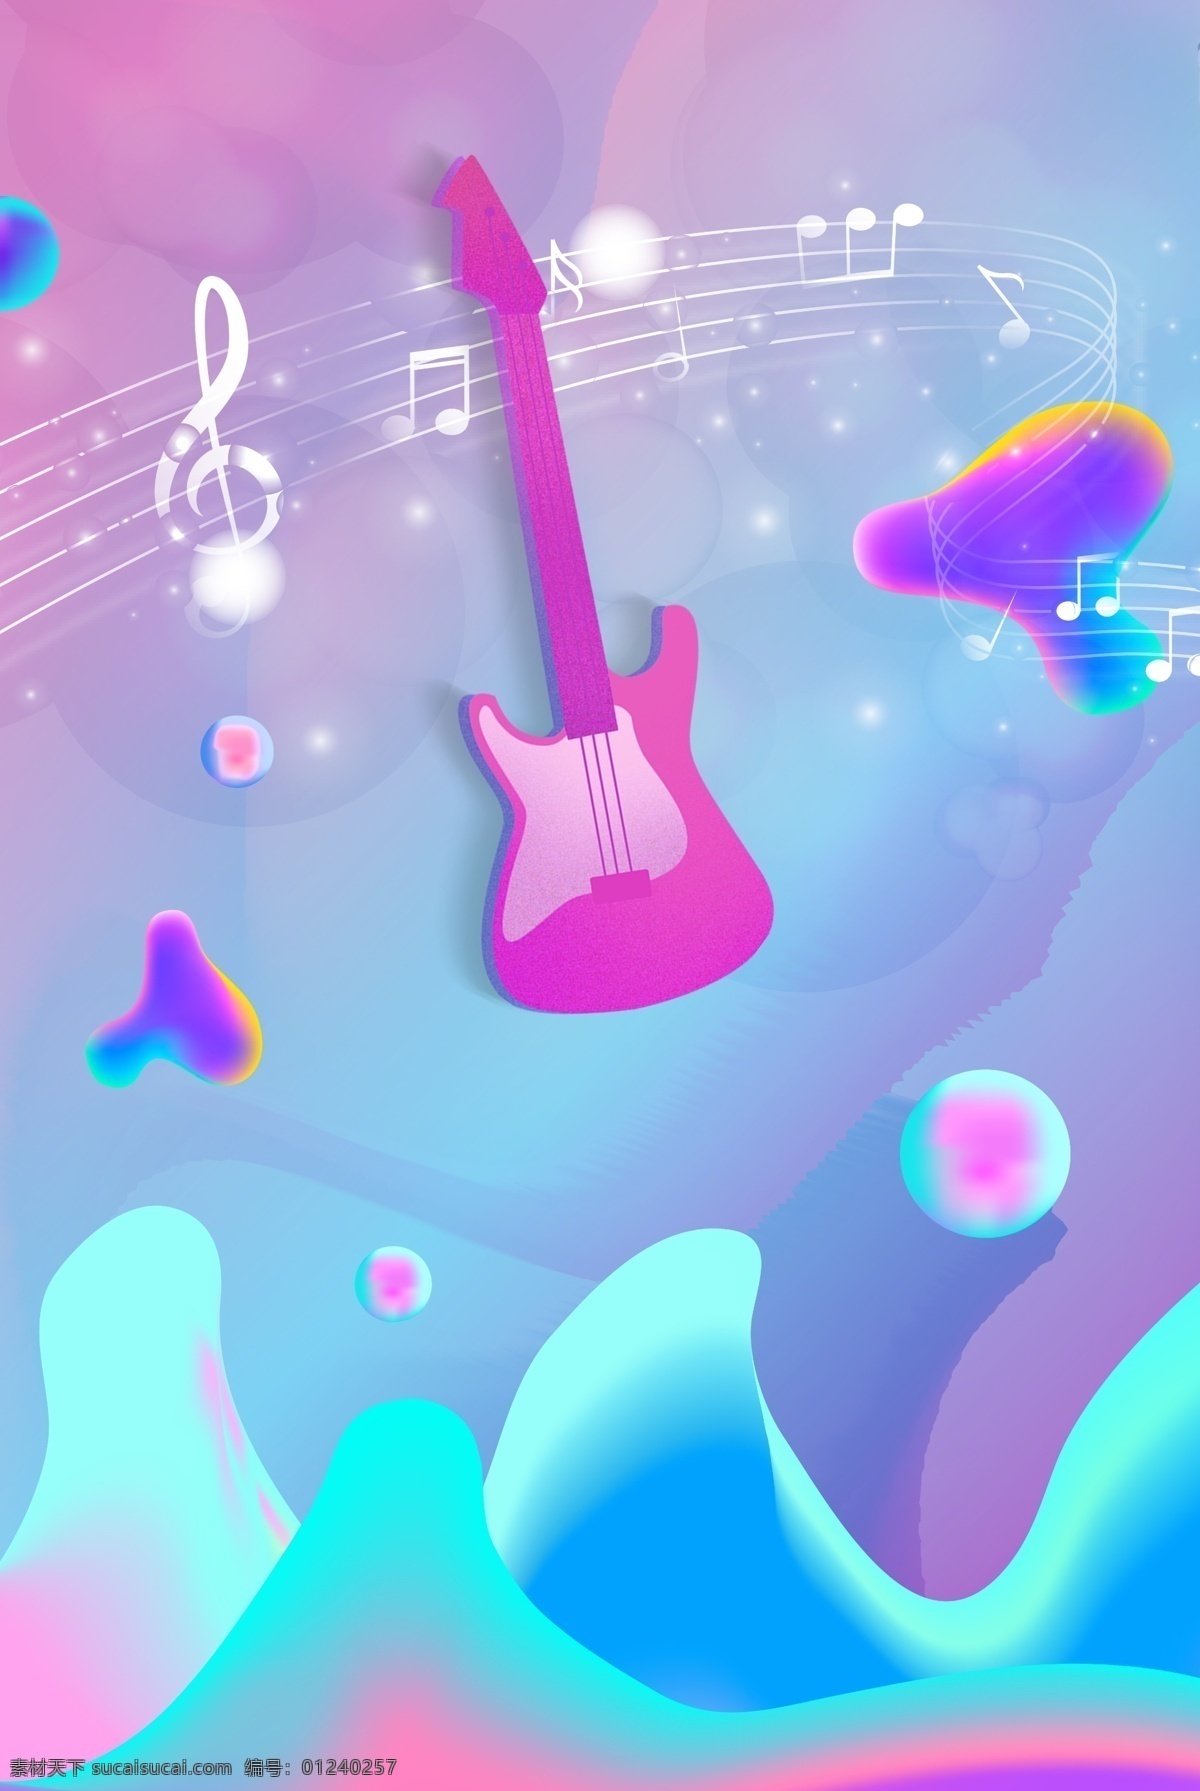 炫彩 风格 音乐节 背景 图 炫彩风 跳跃的音符 吉他 底纹 彩色气泡 炫彩波纹 活跃气氛